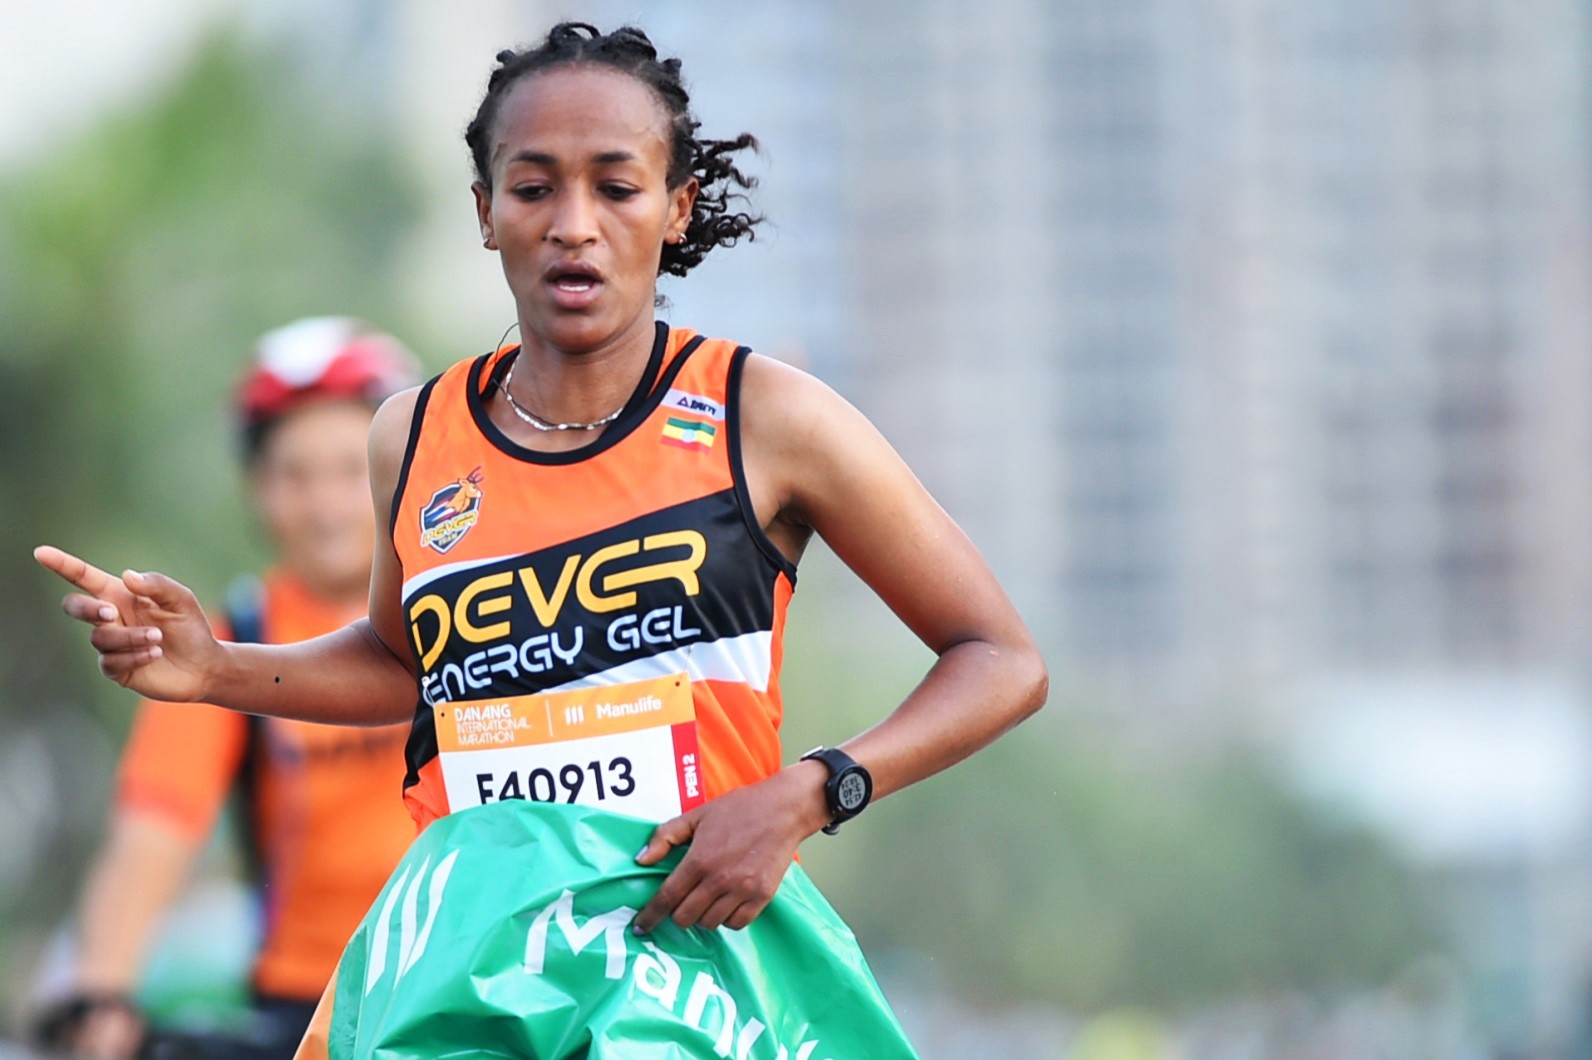 Vận động viên Birehan Marta Tinsae người Ethiopia giành chức vô địch với thành tích 2:58:26 ở nội dung marathon nữ. Ảnh: Linh Phan